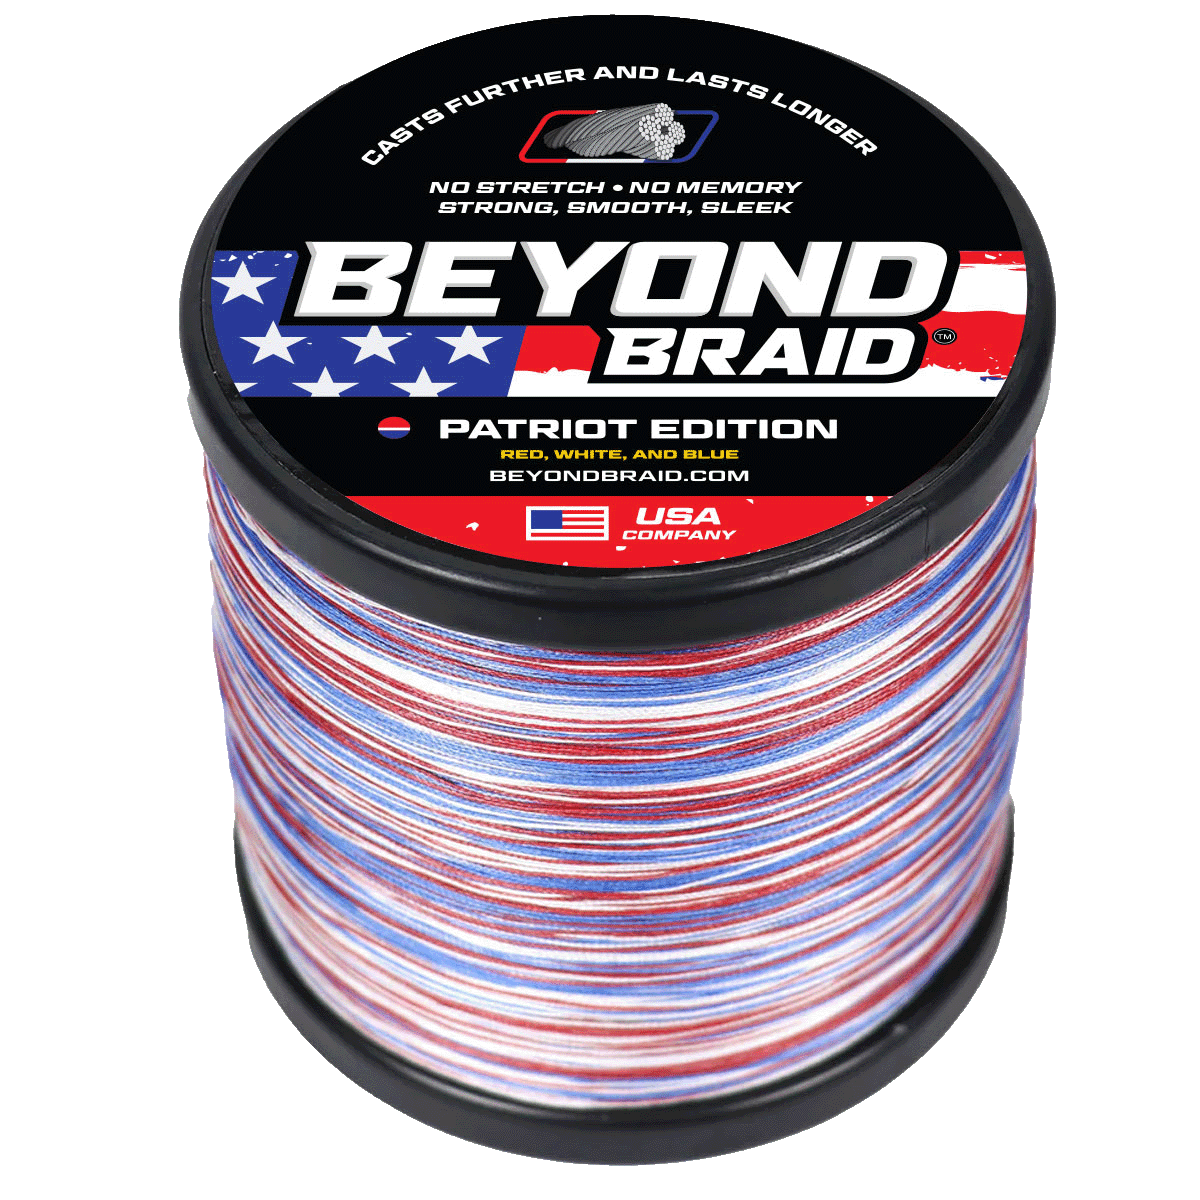 Beyond Braid Braided Fishing Line - Super Strong & Uganda